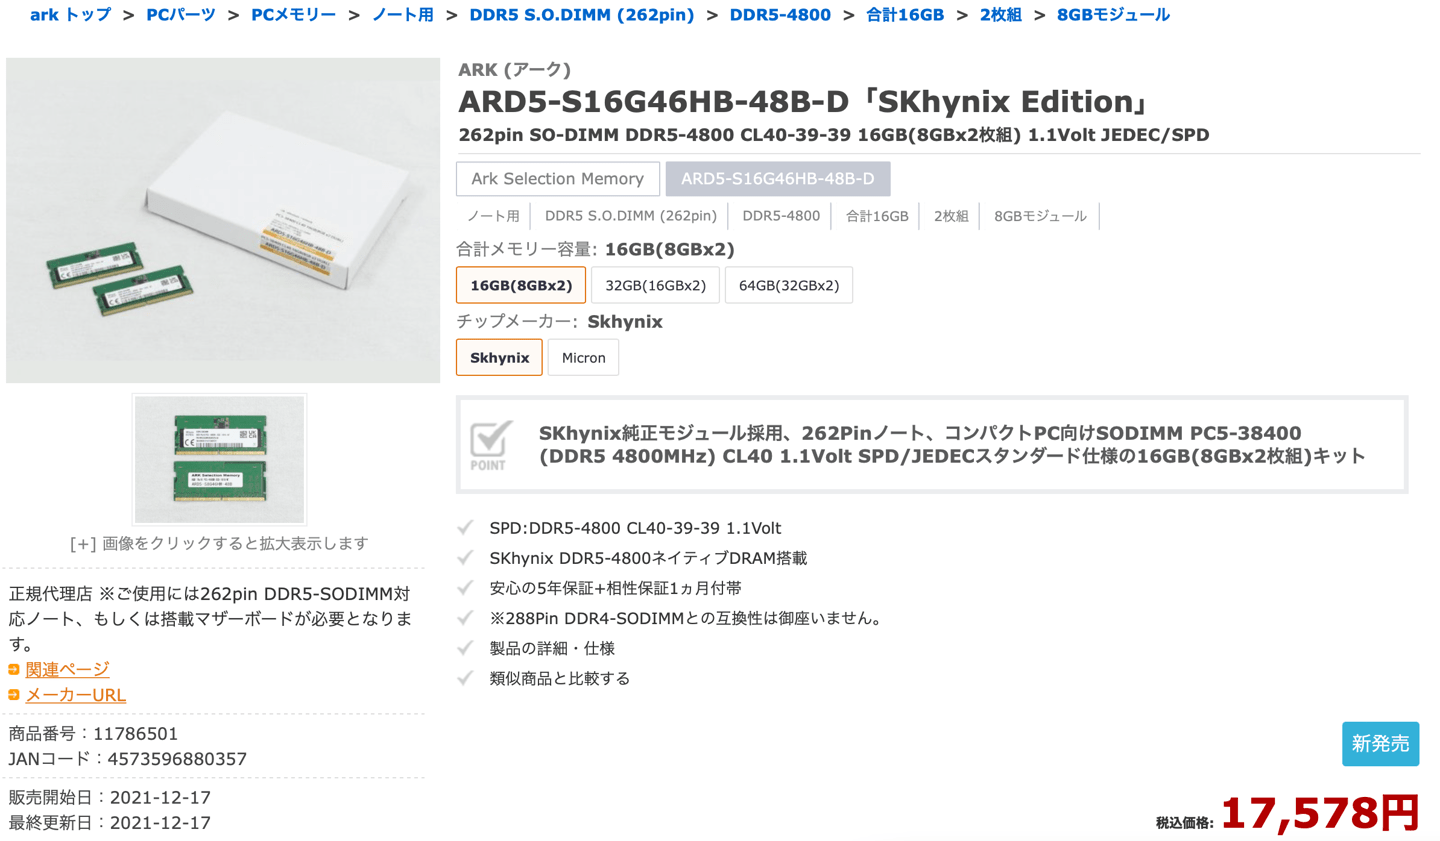 内存|笔记本 DDR5-4800 内存开始上市，8GB*2 约 1000 元